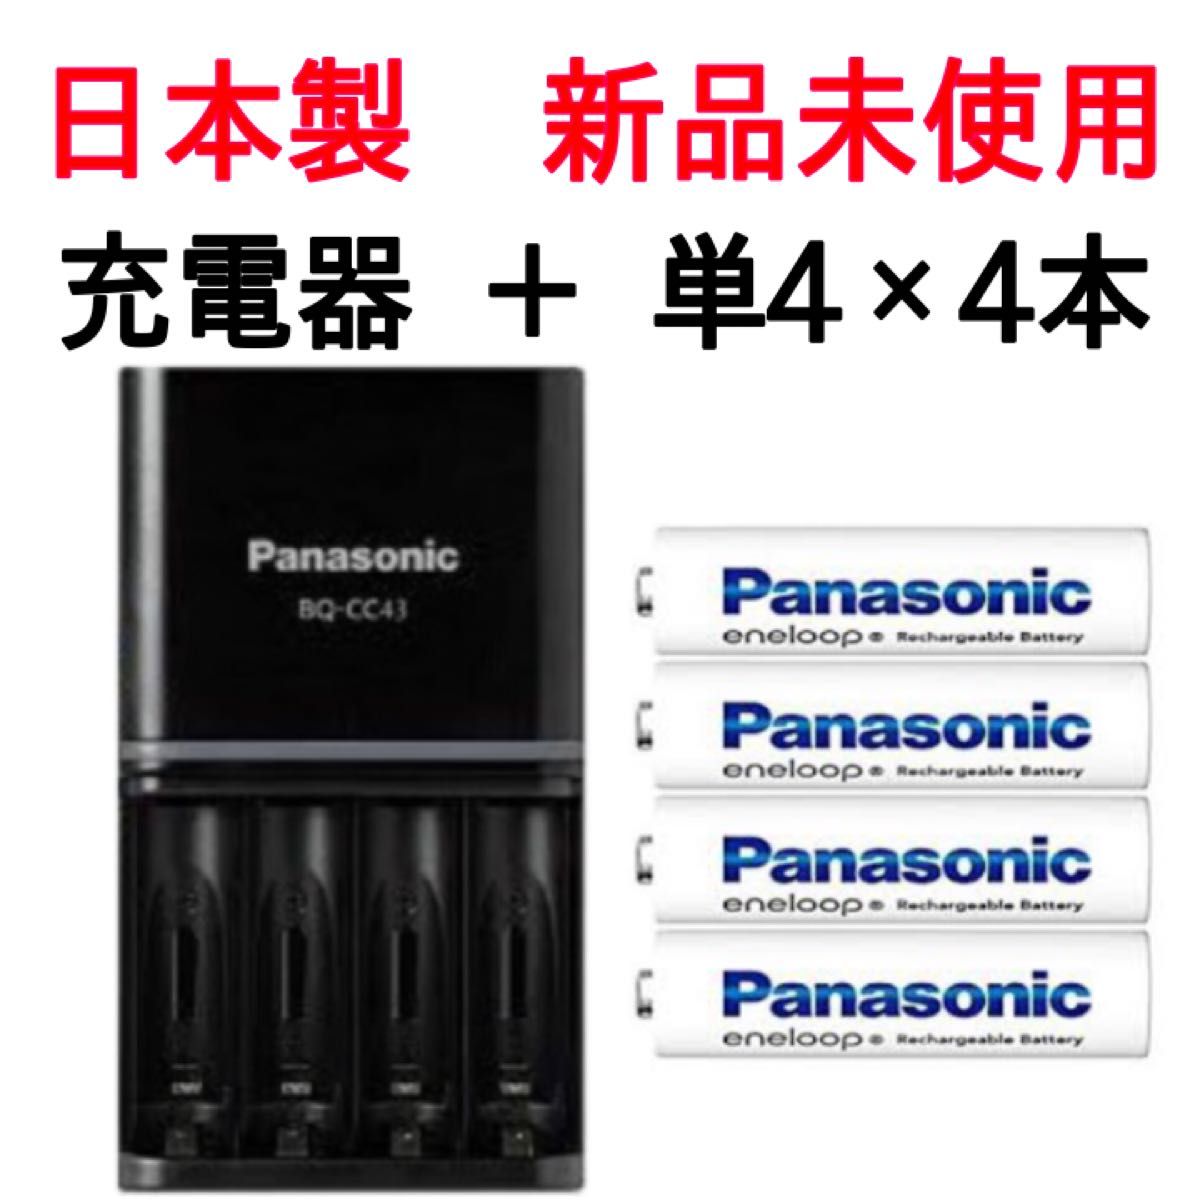 【新品未使用】パナソニック日本製エネループ単4電池と充電器セット